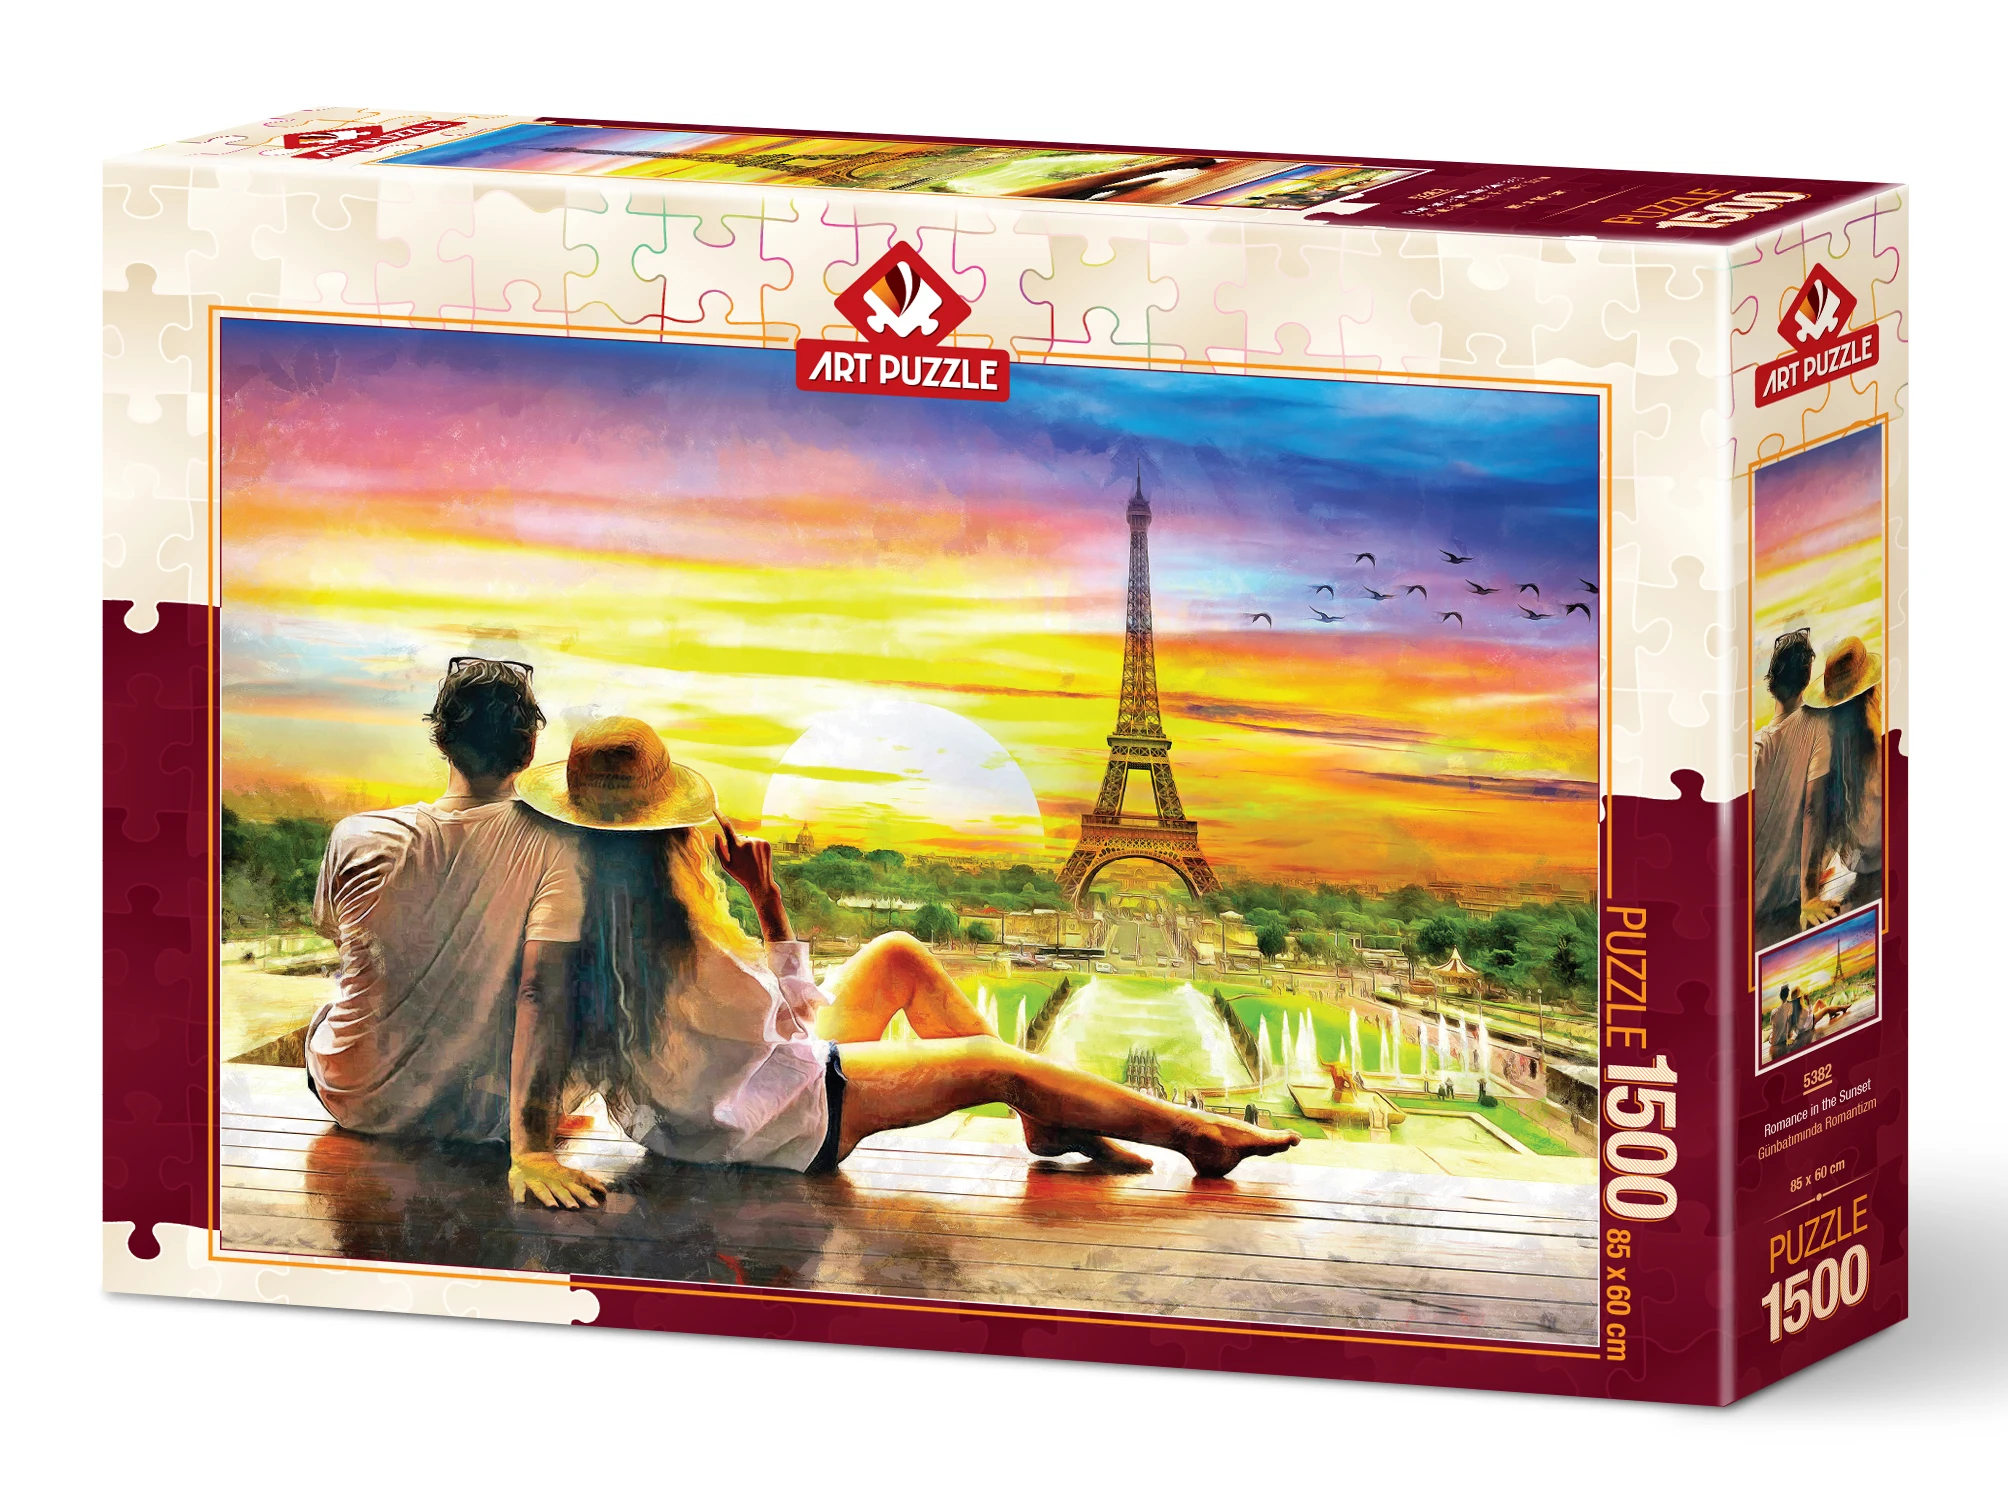 

Художественный Пазл 1500 штук высококачественный пазл на закате Романтика взрослый ребенок искусственный пейзаж обучающая игра подарок 85x60